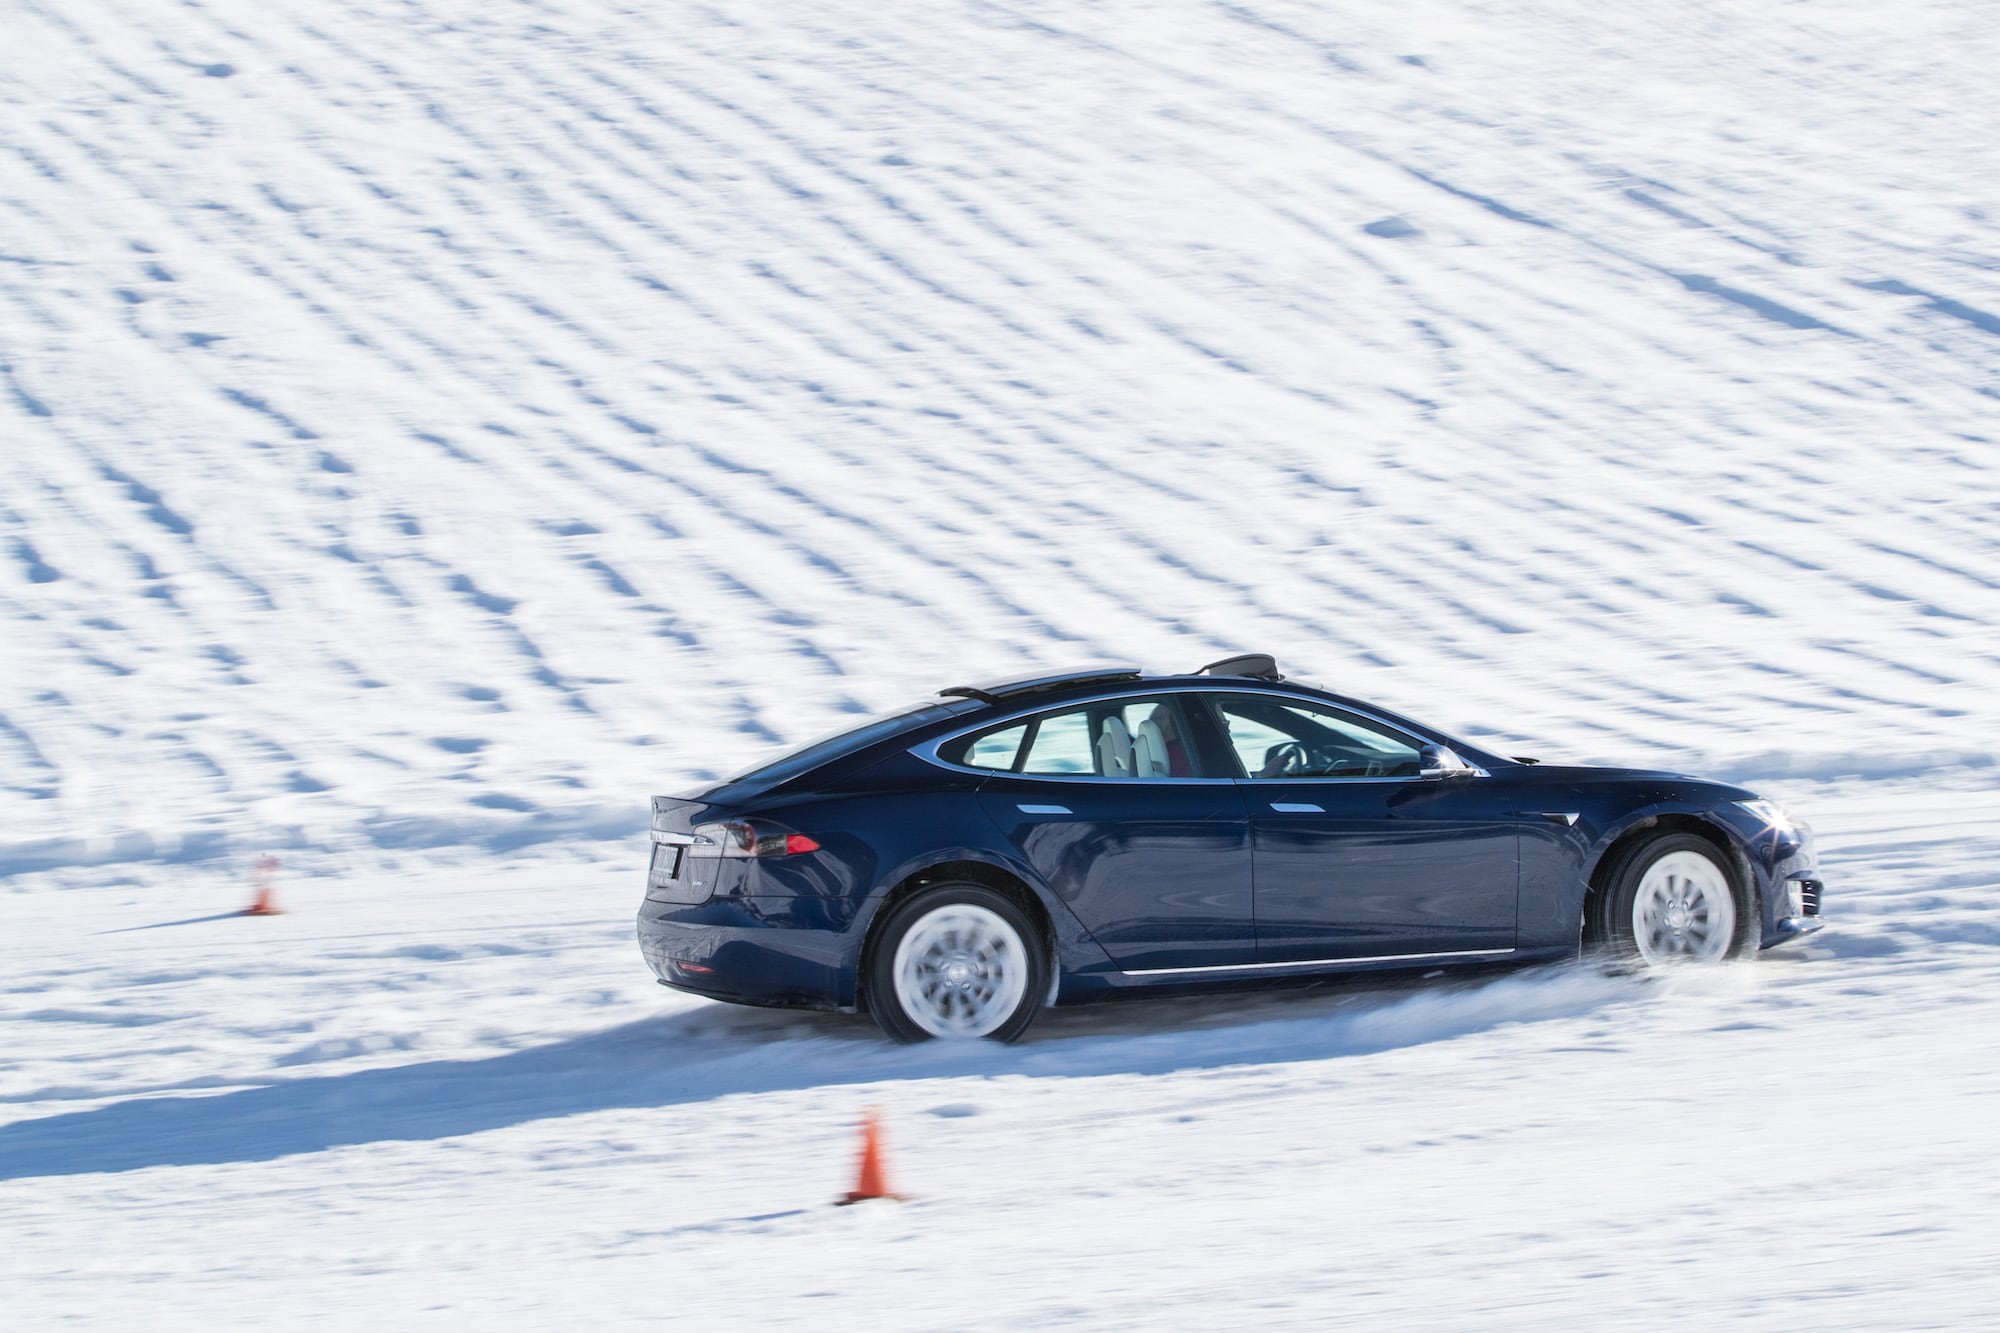 Härteprobe unter winterlichen Bedingungen: Die Tesla Winter Driving Experience 1